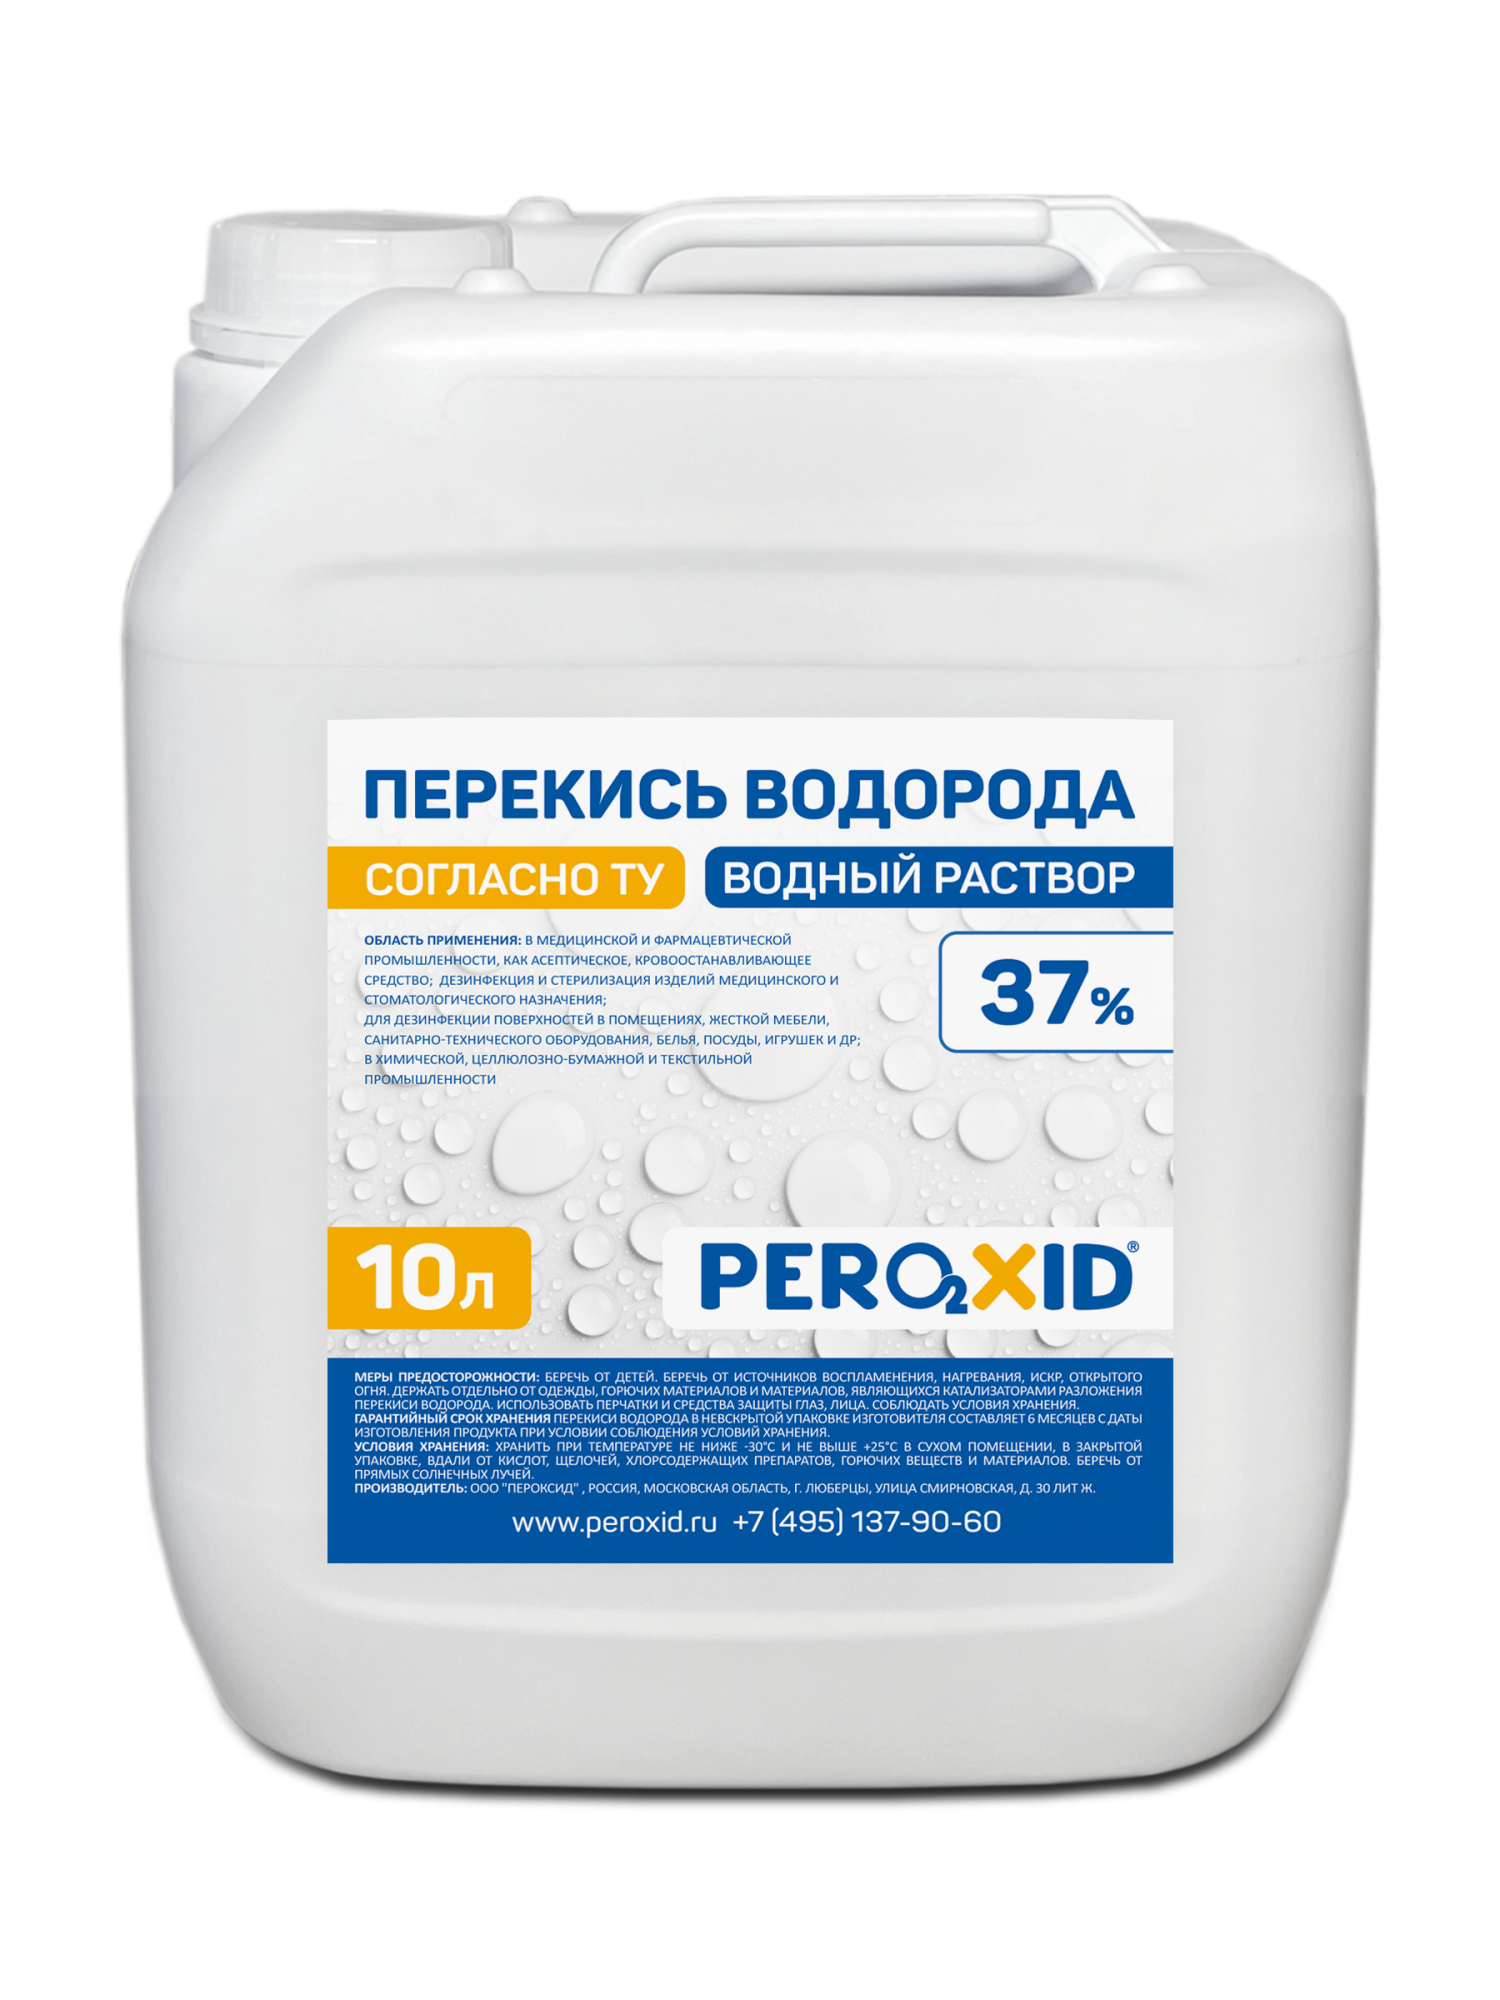 Перекись водорода водный раствор PEROXID 37% марка  ТУ 2123-001-25665344-2008 10 л/12 кг